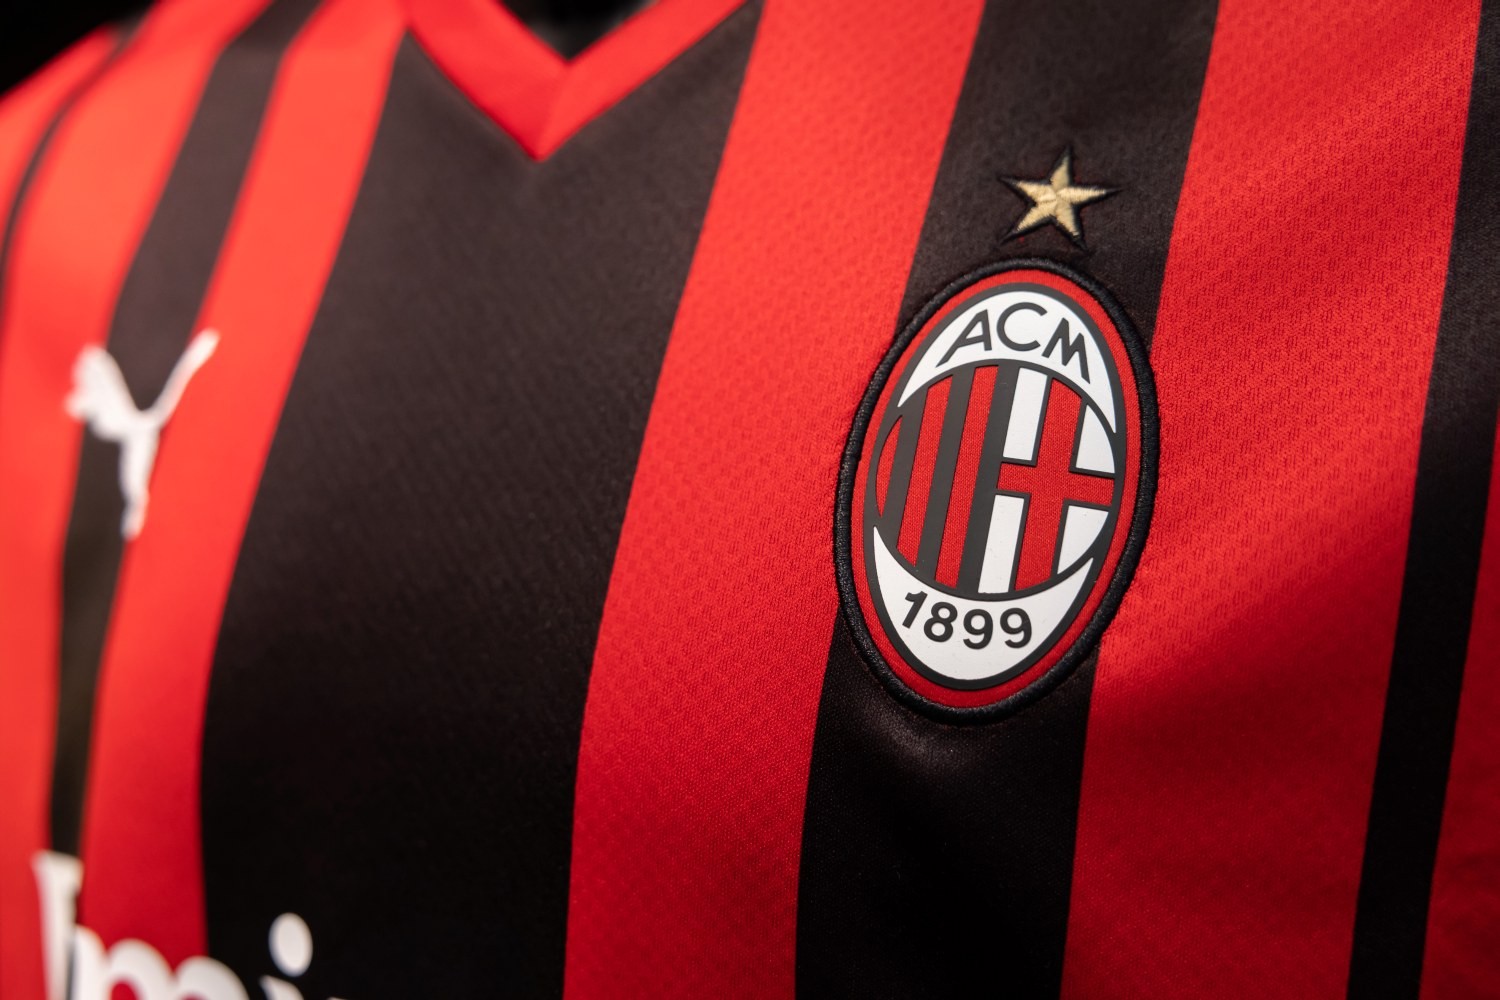 AC Milan na zakupach w Ekstraklasie. W poniedziałek testy medyczne